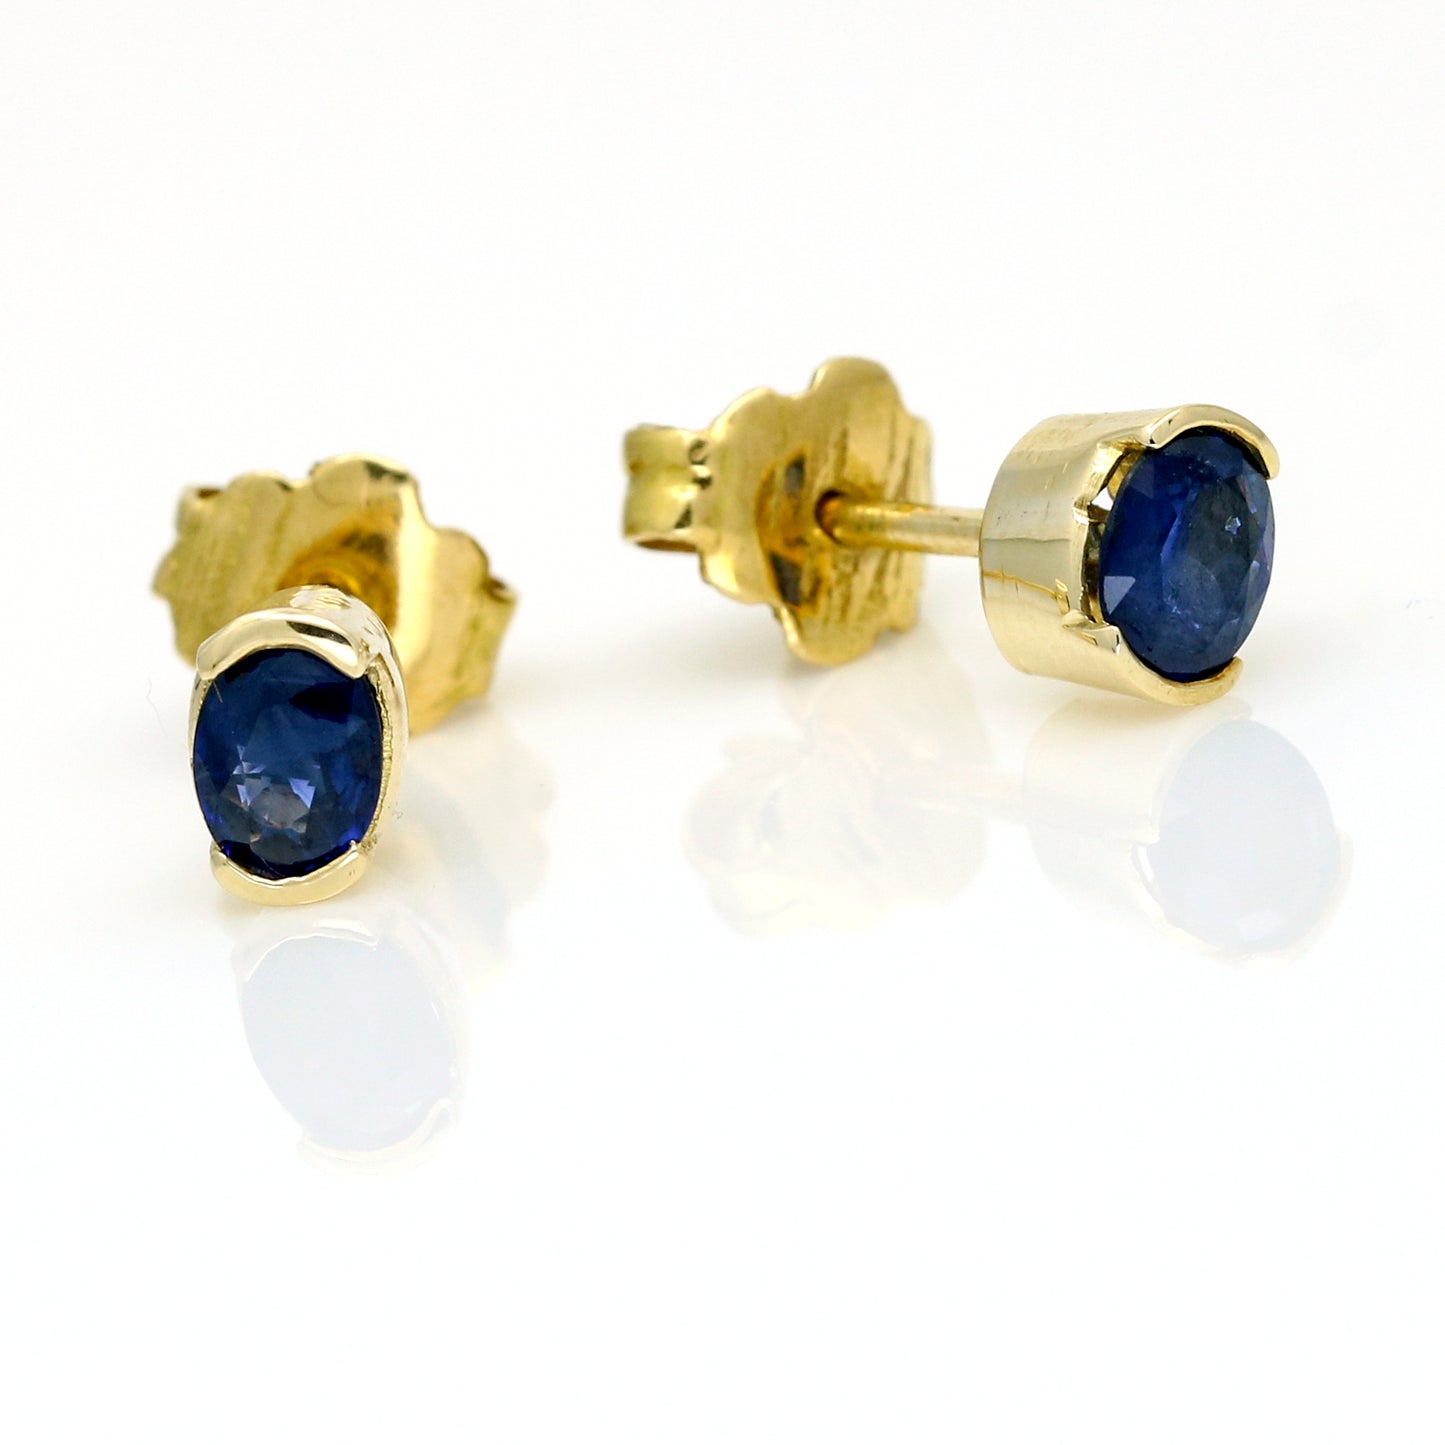 Oval Blue Sapphire Stud Earrings in 14k Yellow Gold